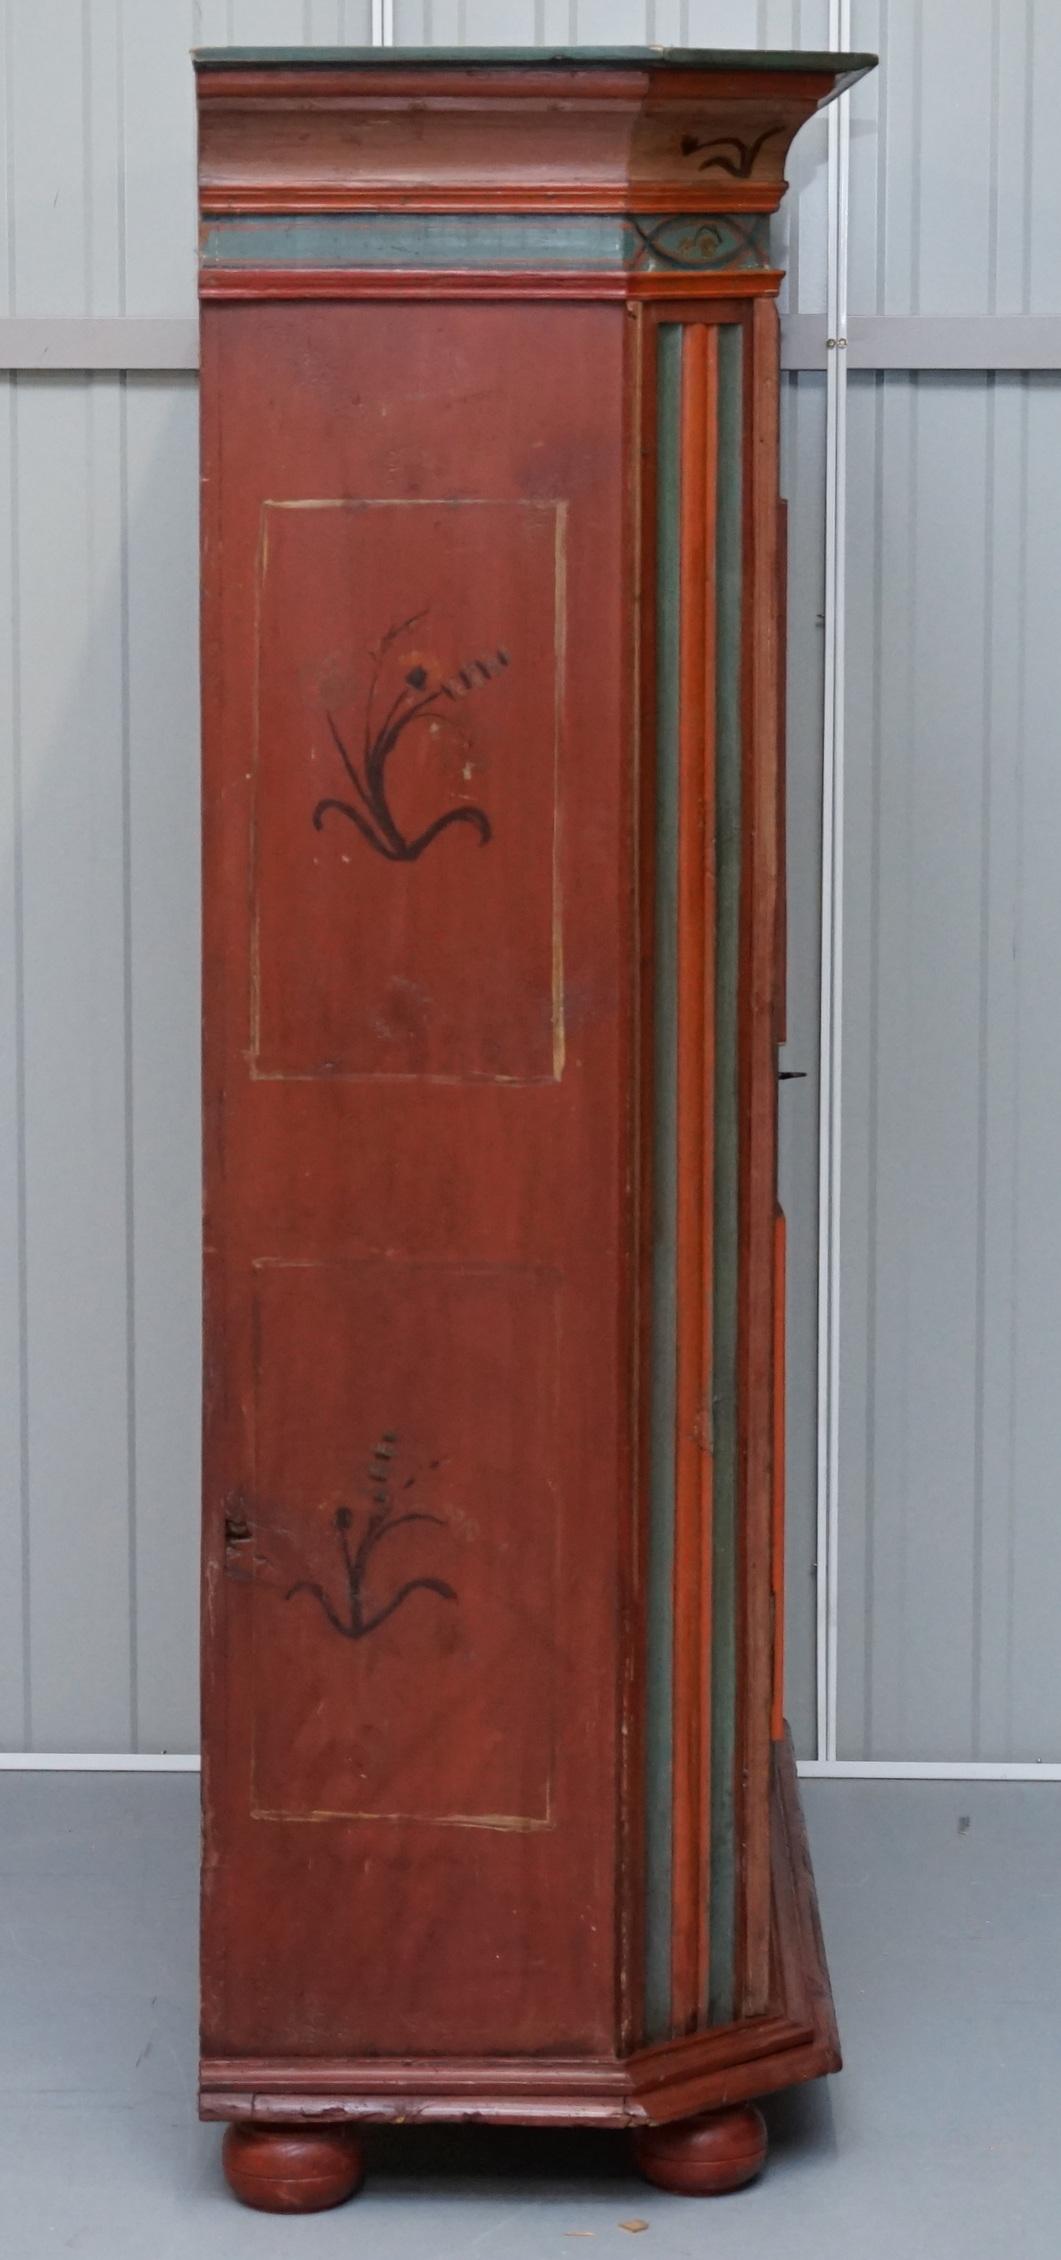 Rare Dated 1813 Hand Painted Pine Austrian Wardrobe or Bauernschrank Cupboard 5